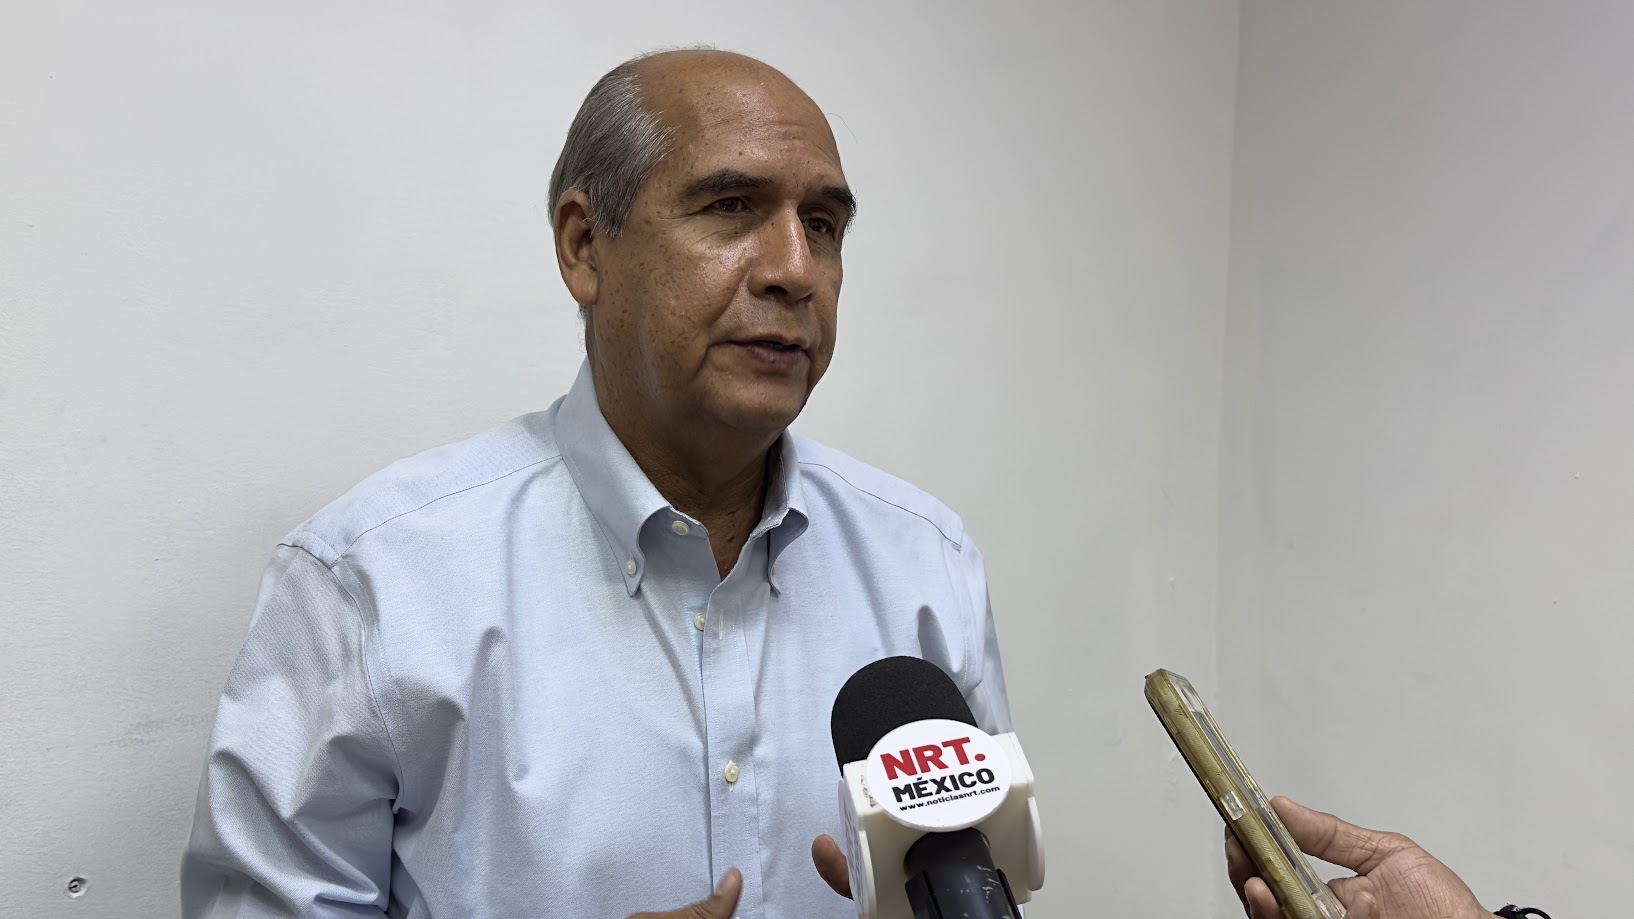 Preocupante operación de anexos clandestinos: alcalde de Monclova